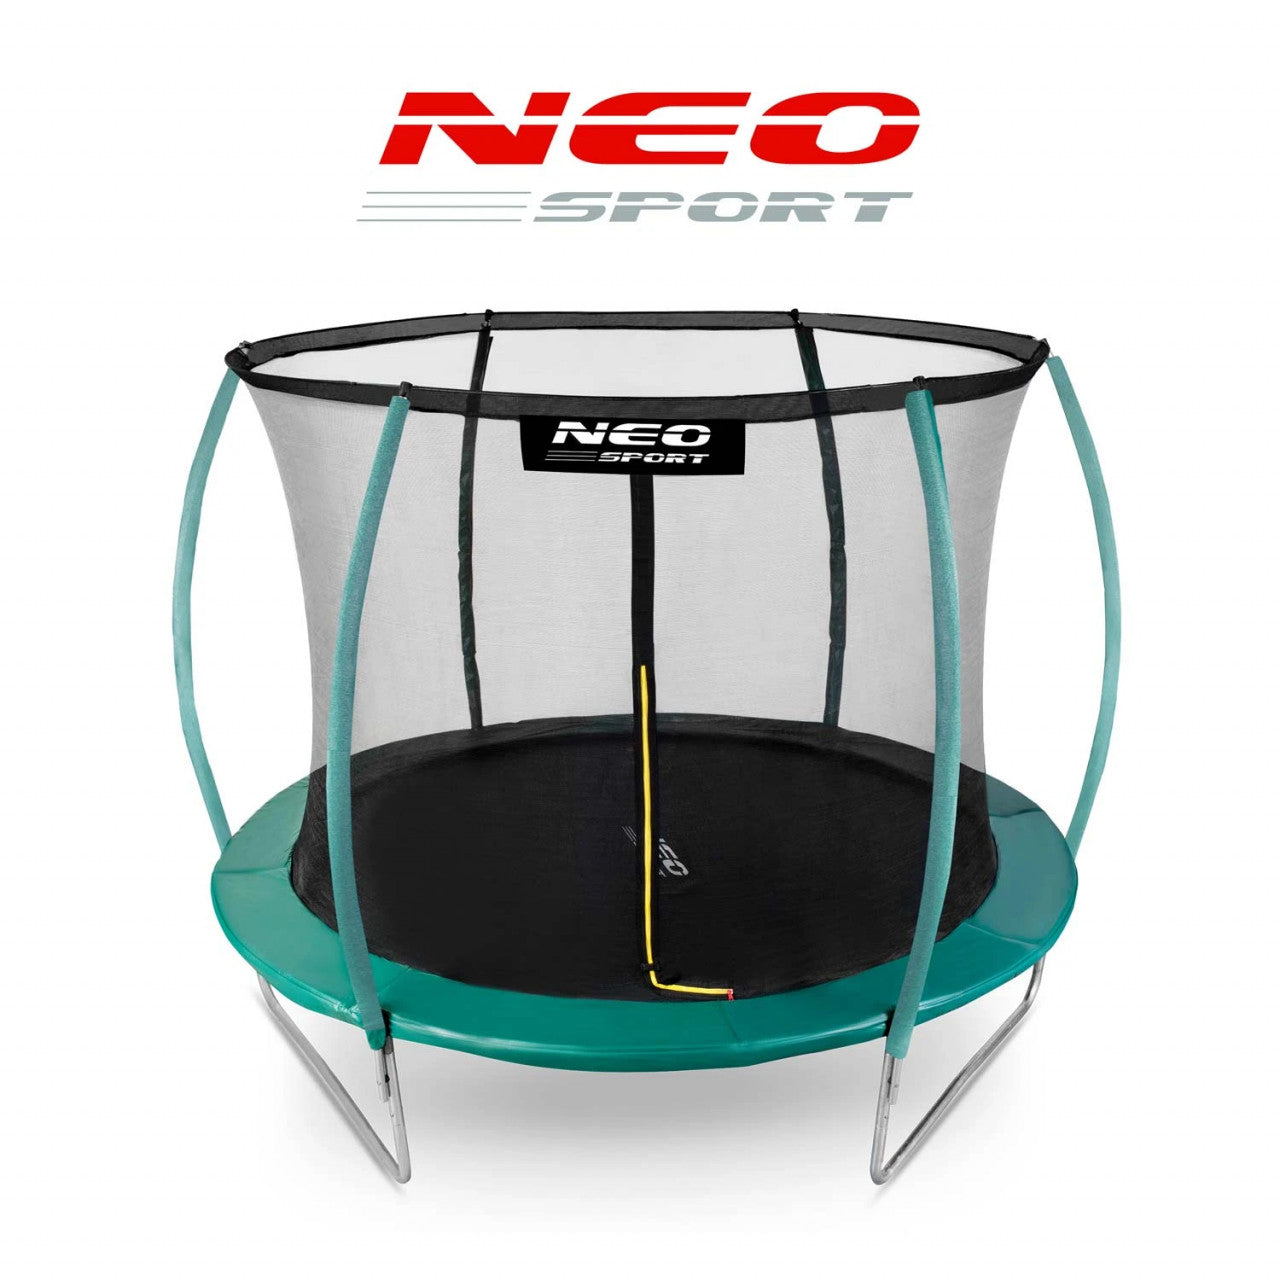 Trambulina pentru copii, Neo-Sport, 252 cm / 8 ft, cu plasa interioara, greutate maxima 100 kg, NS-08C181